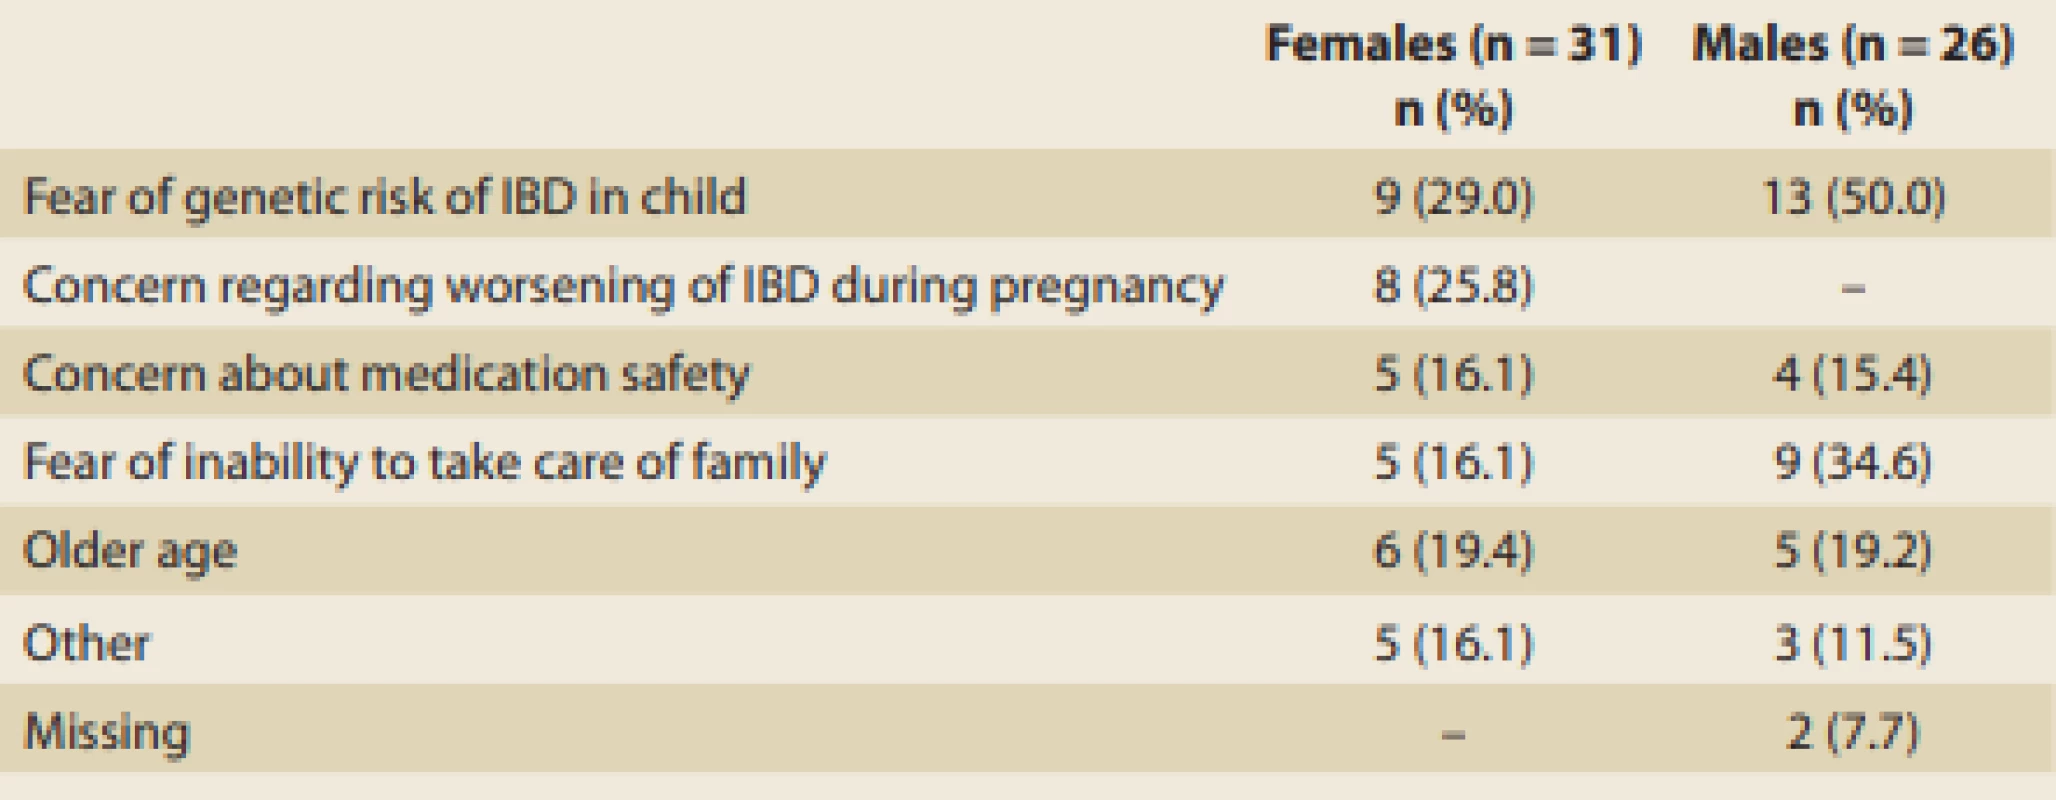 Reason for voluntary childlessness in patients with infl ammatory bowel disease (IBD).
Tab. 5. Důvody dobrovolné bezdětnosti u pacientů s idiopatickými střevními záněty (IBD).